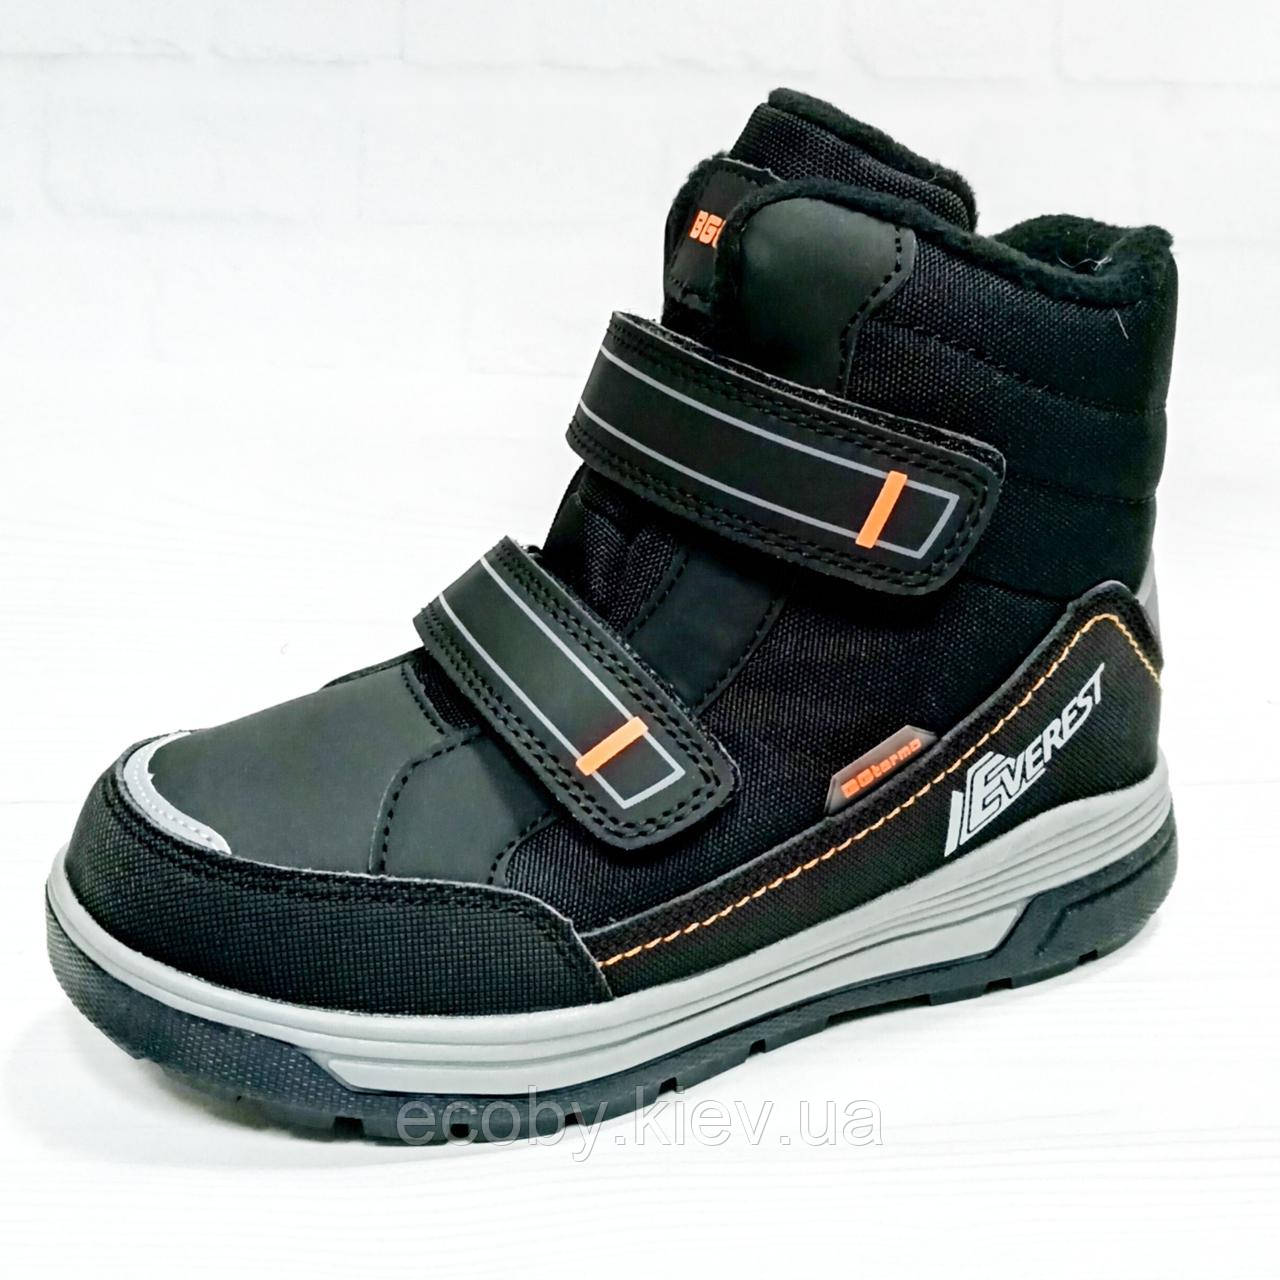 Зимові черевики, термочеревики для хлопчика тм B&G, 34 розмір (24.0см), чорні.